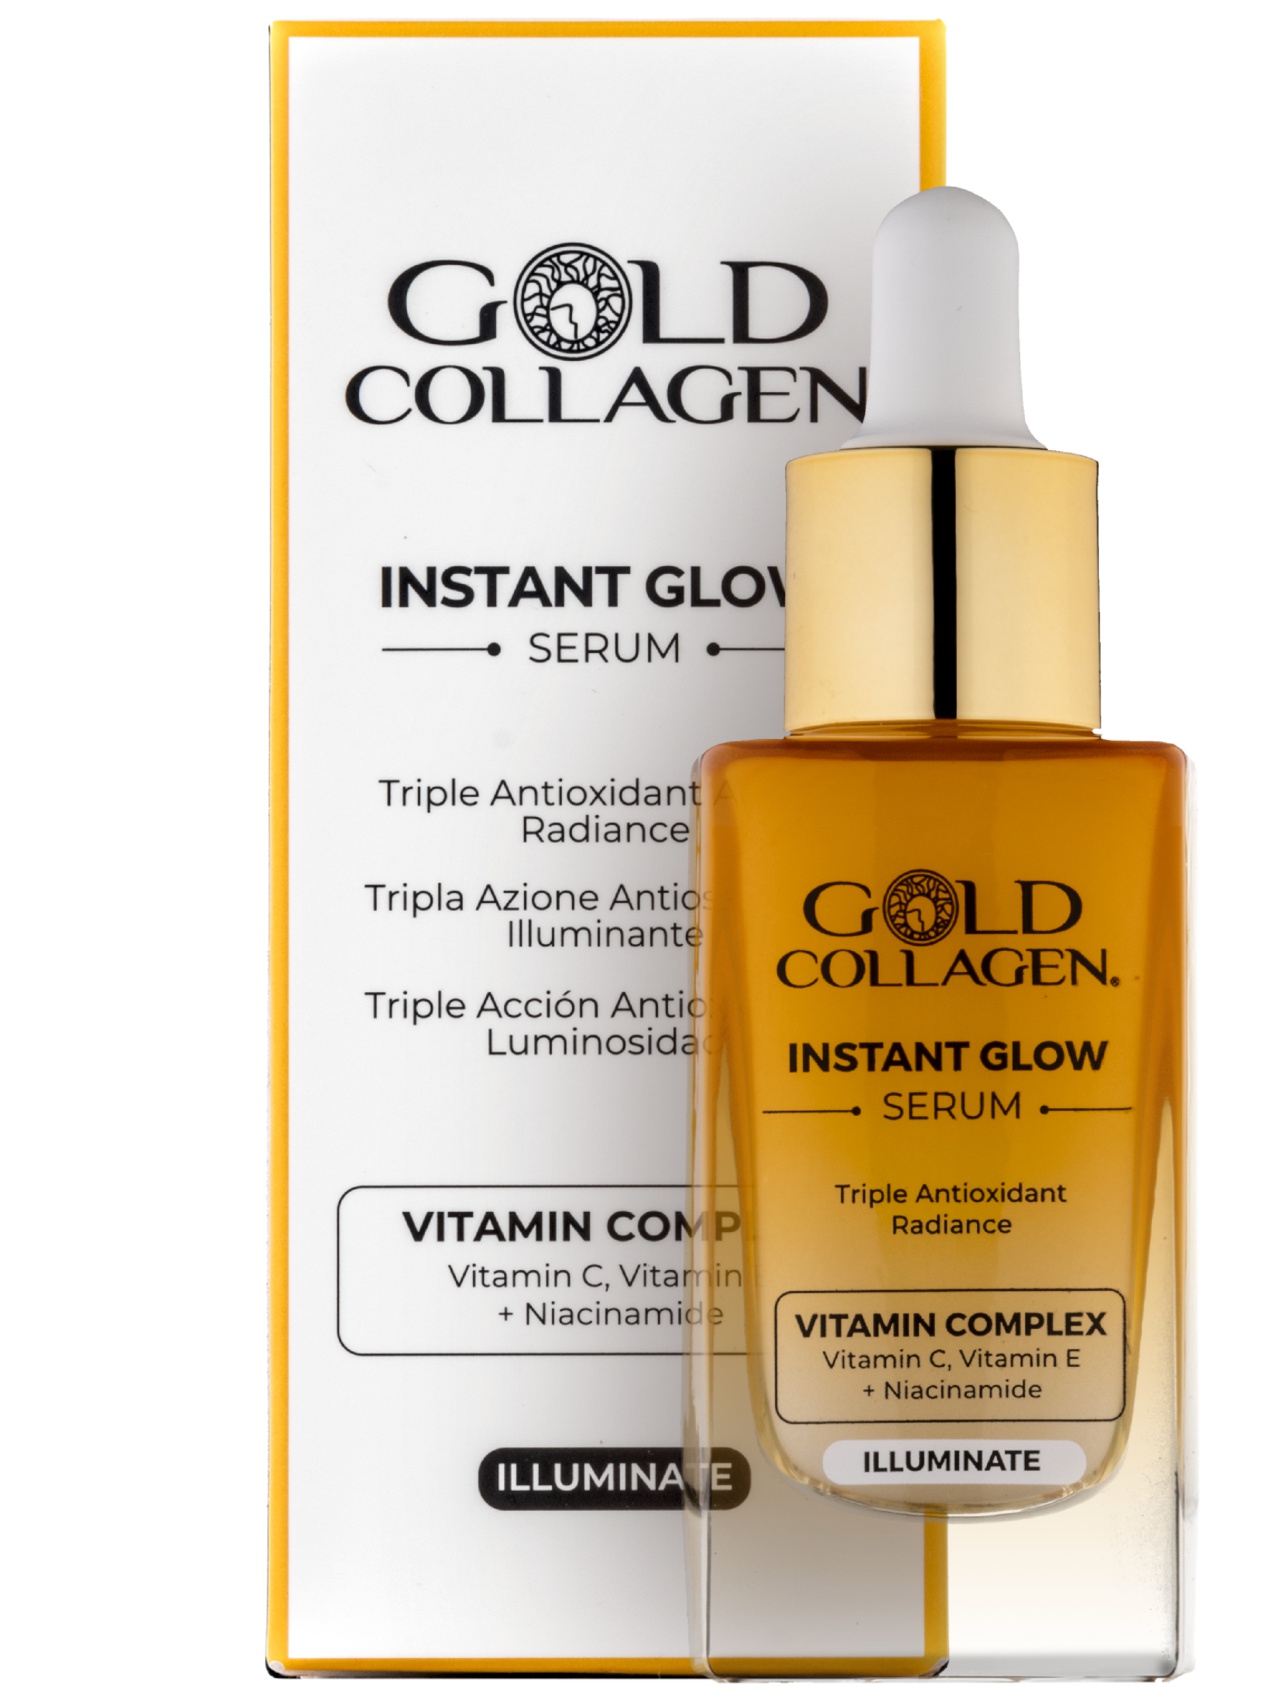 Gold Collagen Instant Glow Serum